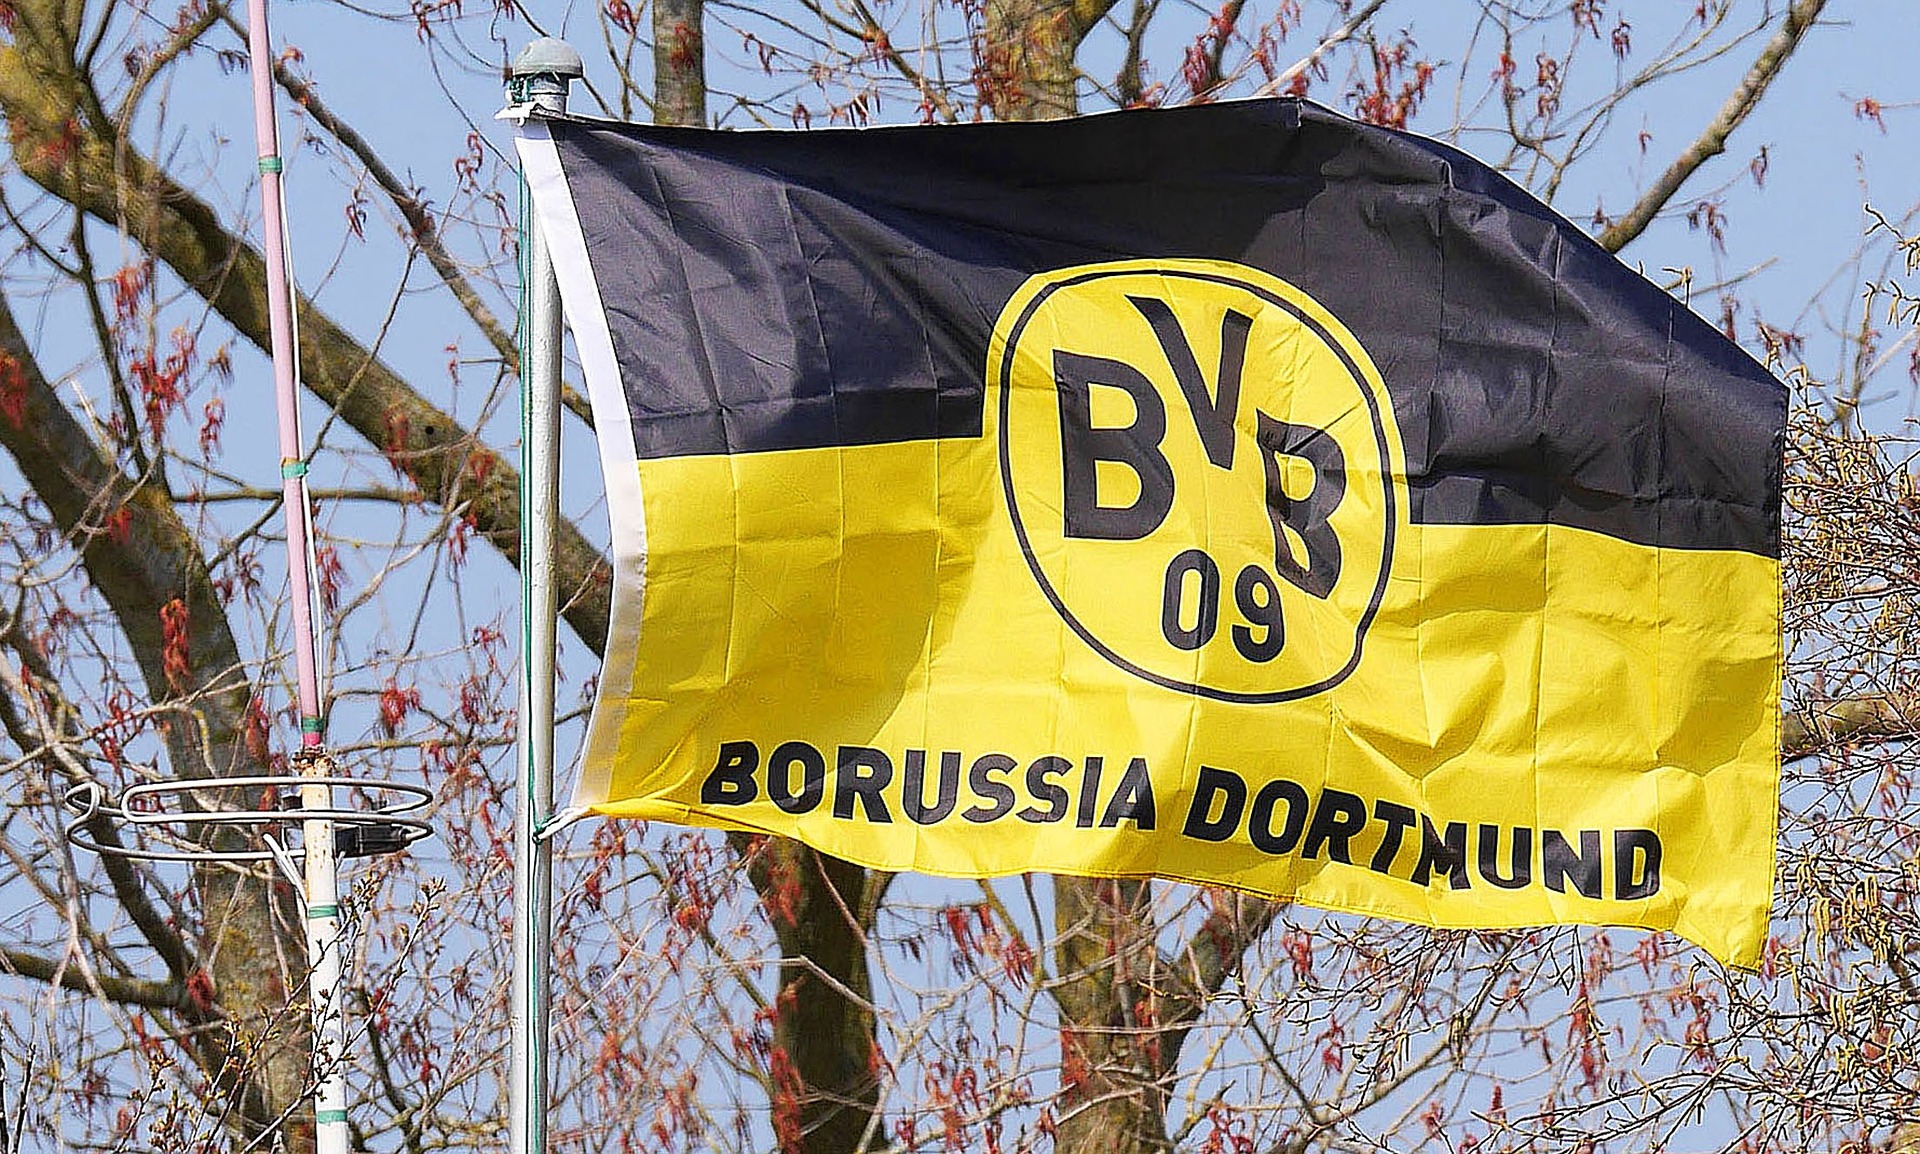 Zawodnicy Borussii z Dortmundu byli bez większych szans i w rozrachunku końcowym przegrali rezultatem 0 do 4!